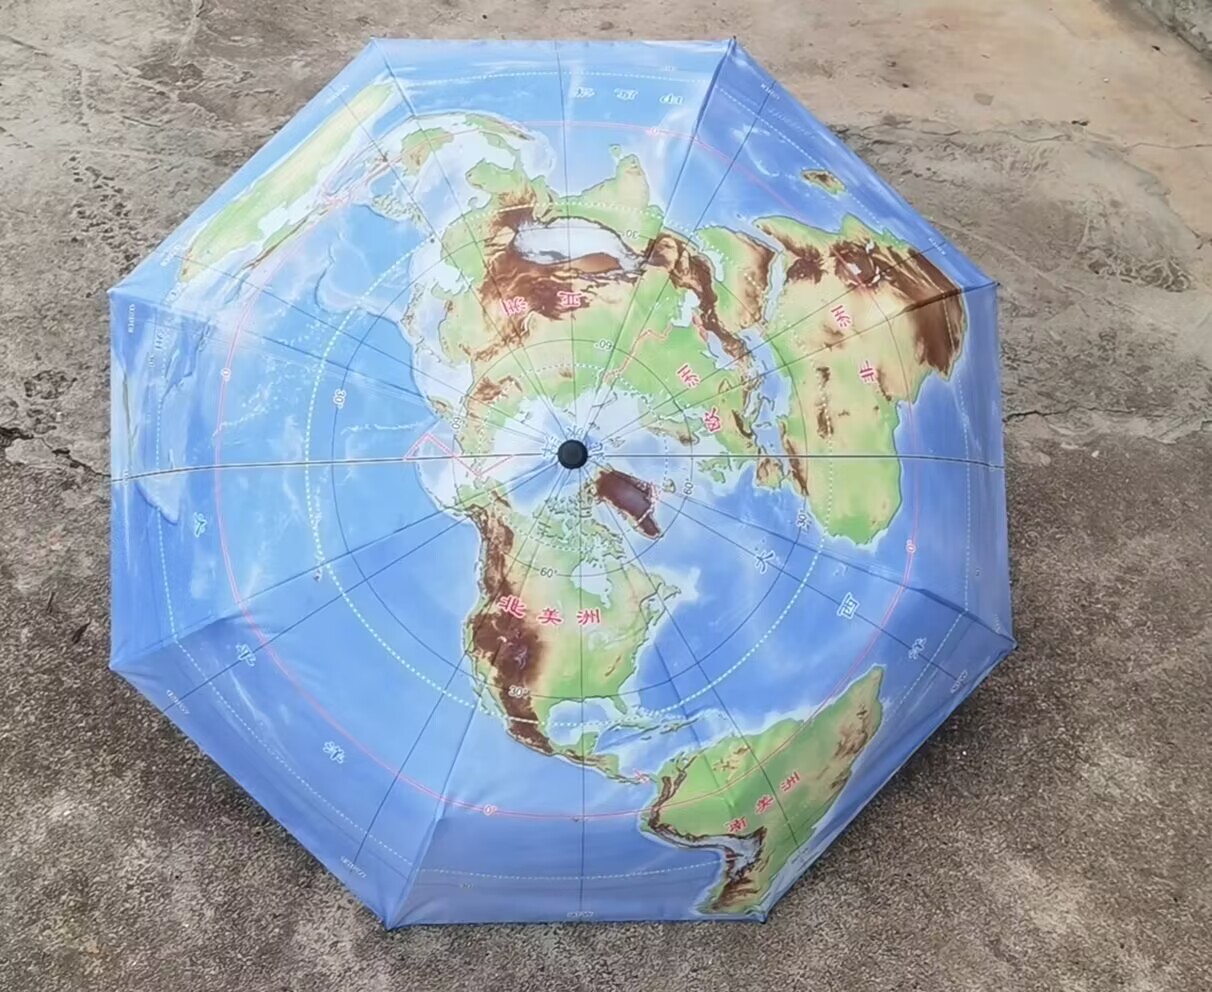 高档地图伞三折叠晴雨伞展示别致北极为中心50°S以北海陆雨季